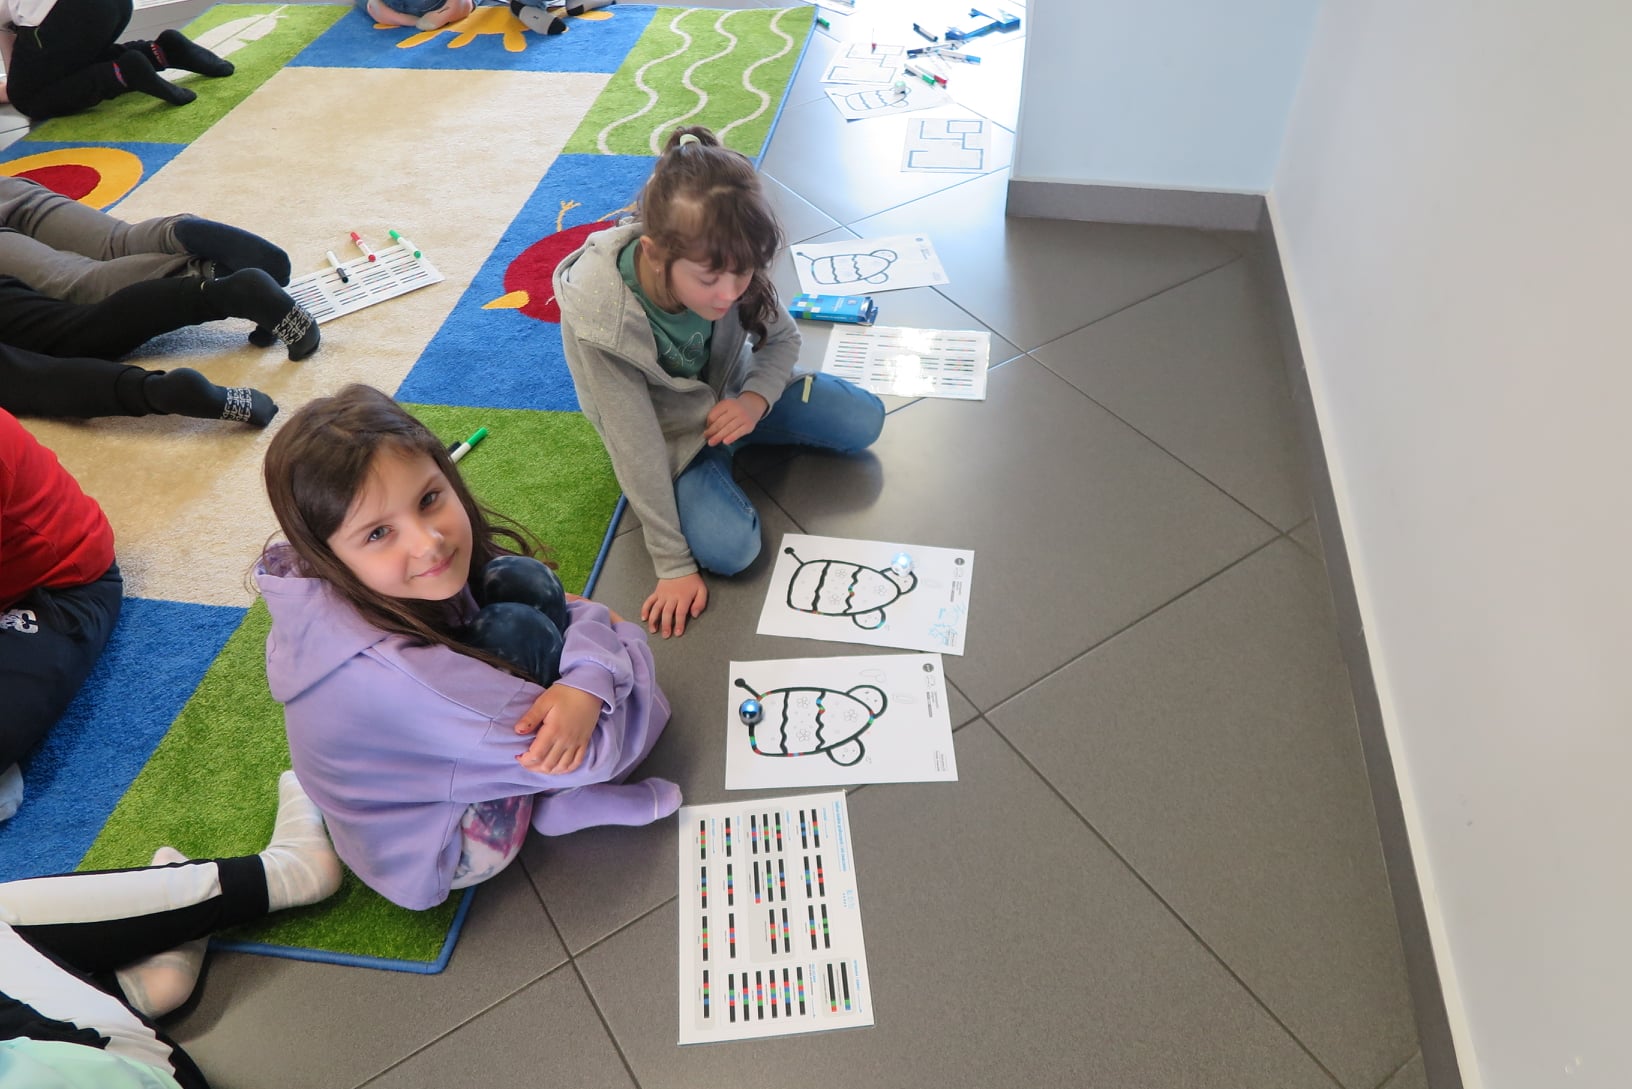 Dwie dziewczynki siedzą na podłodze w tle za nimi widać stopy i nogi innych dzieci leżących na dywanie. Przed dziewczynkami leżą kartki z kolorowymi rysunkami (namalowanymi przez nie trasami dla ozobotów).